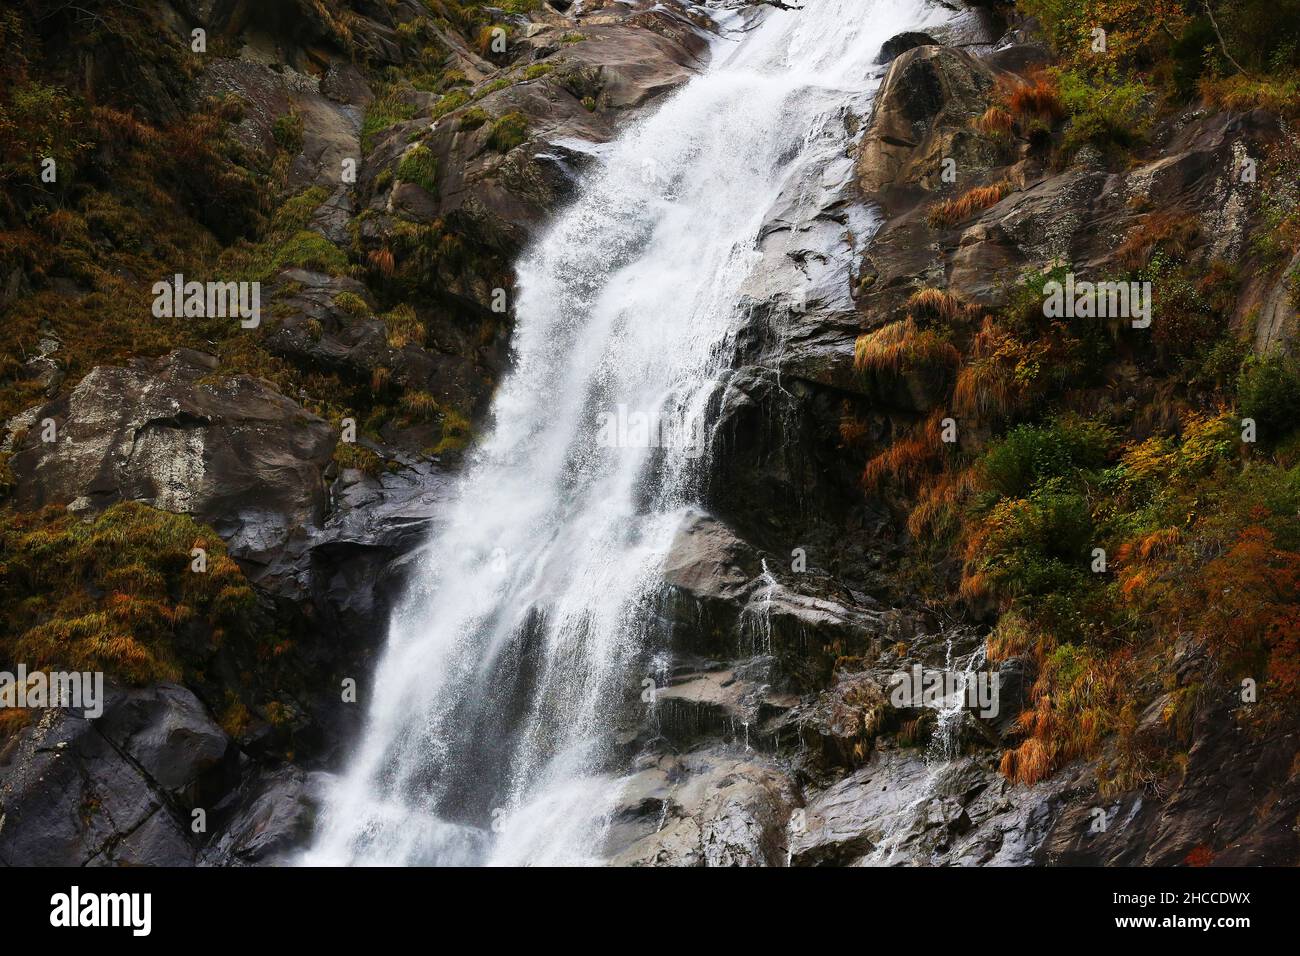 Salute, benessere, Wasserfall, Dolomiten, Südtirol, Meran , Bozen, Tosendes wildes Wasser stürzt von dem Berg und den Felsen herunter Foto Stock